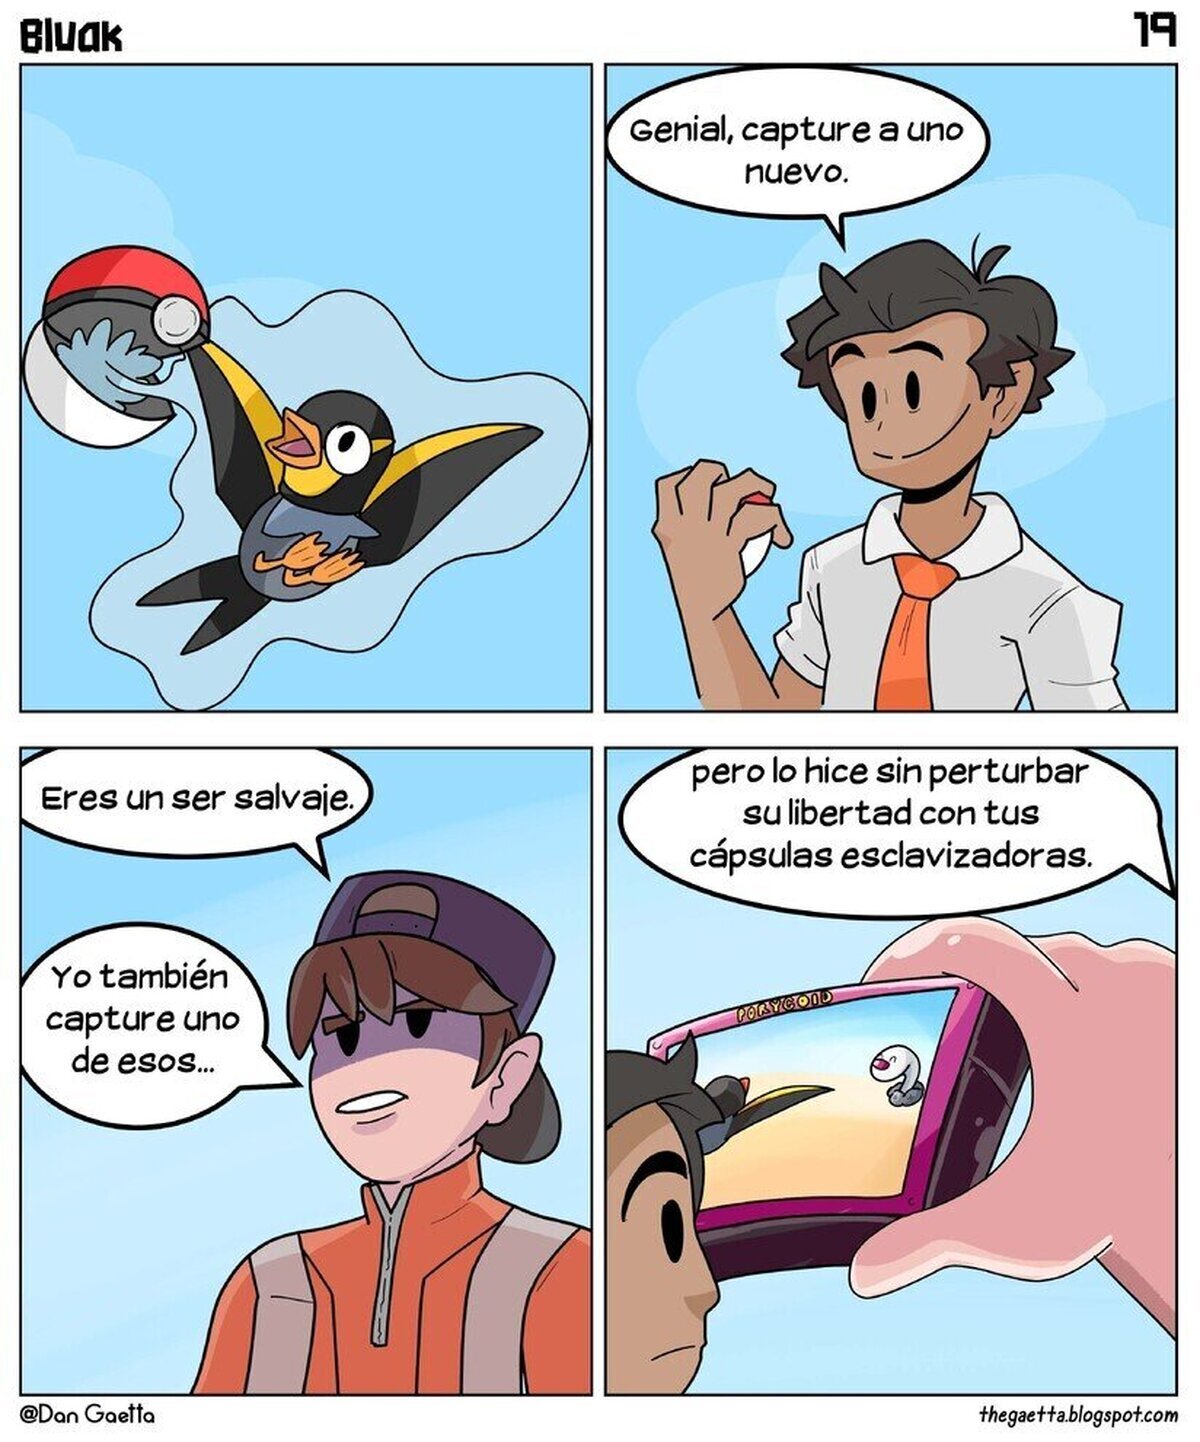 La superioridad moral de los jugadores de pokemon snap